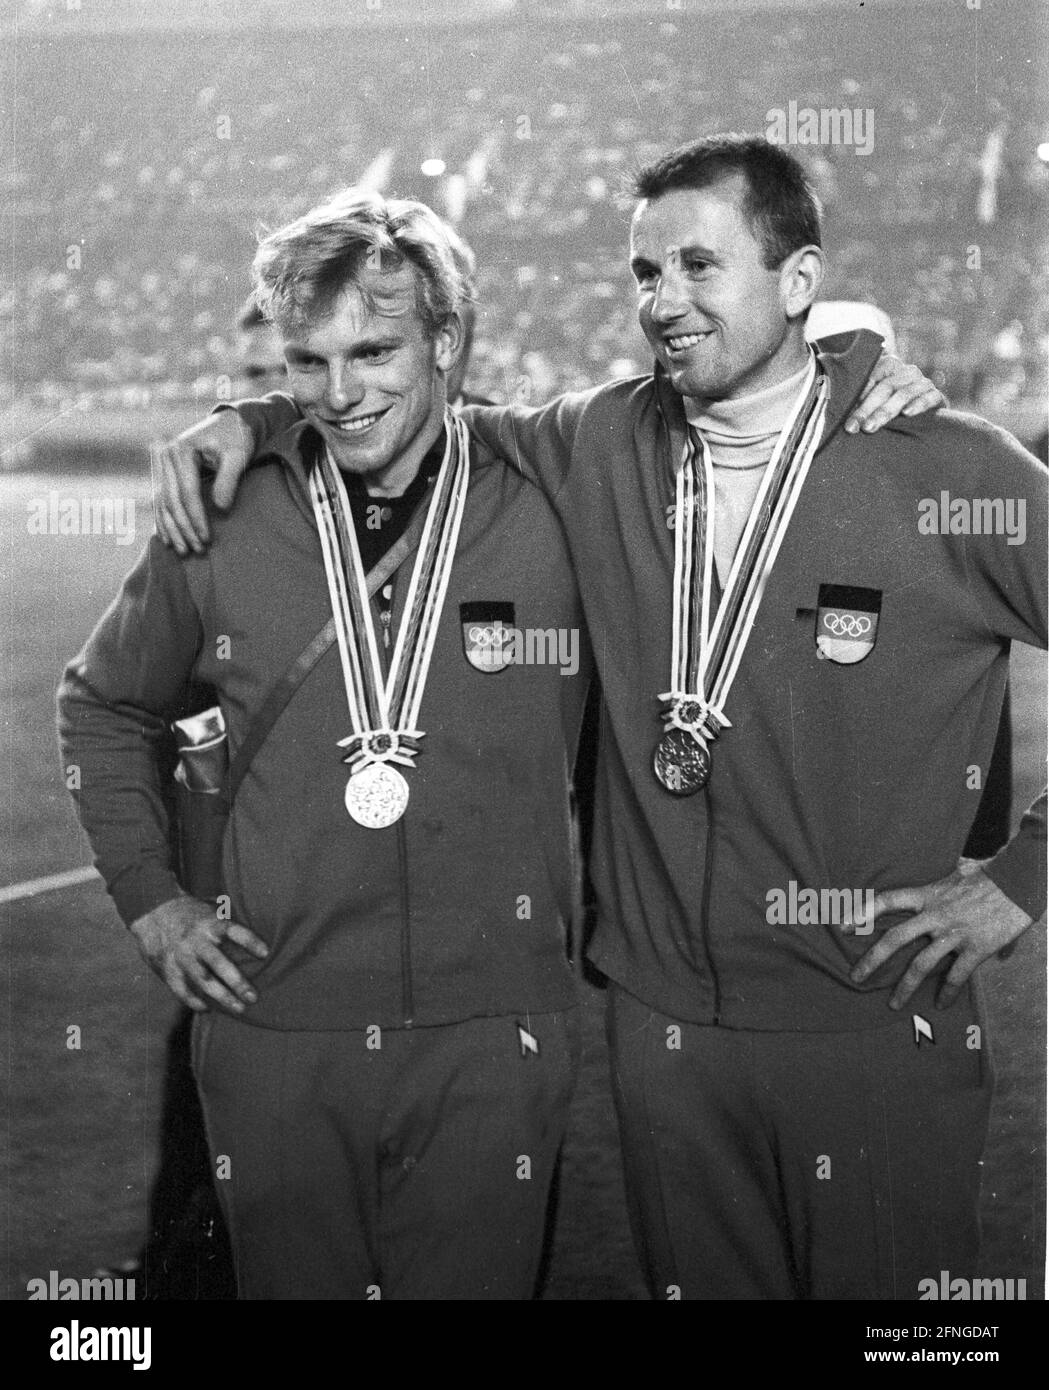 Olimpiadas de verano en Tokio 1964: Atletismo: Bóveda de polo: Wolfgang Reinhardt (izquierda) con medalla de plata y Klaus Lehnertz (ambos equipo alemán/FRG) con medalla de bronce. Foto 21.10.1964. [traducción automática] Foto de stock